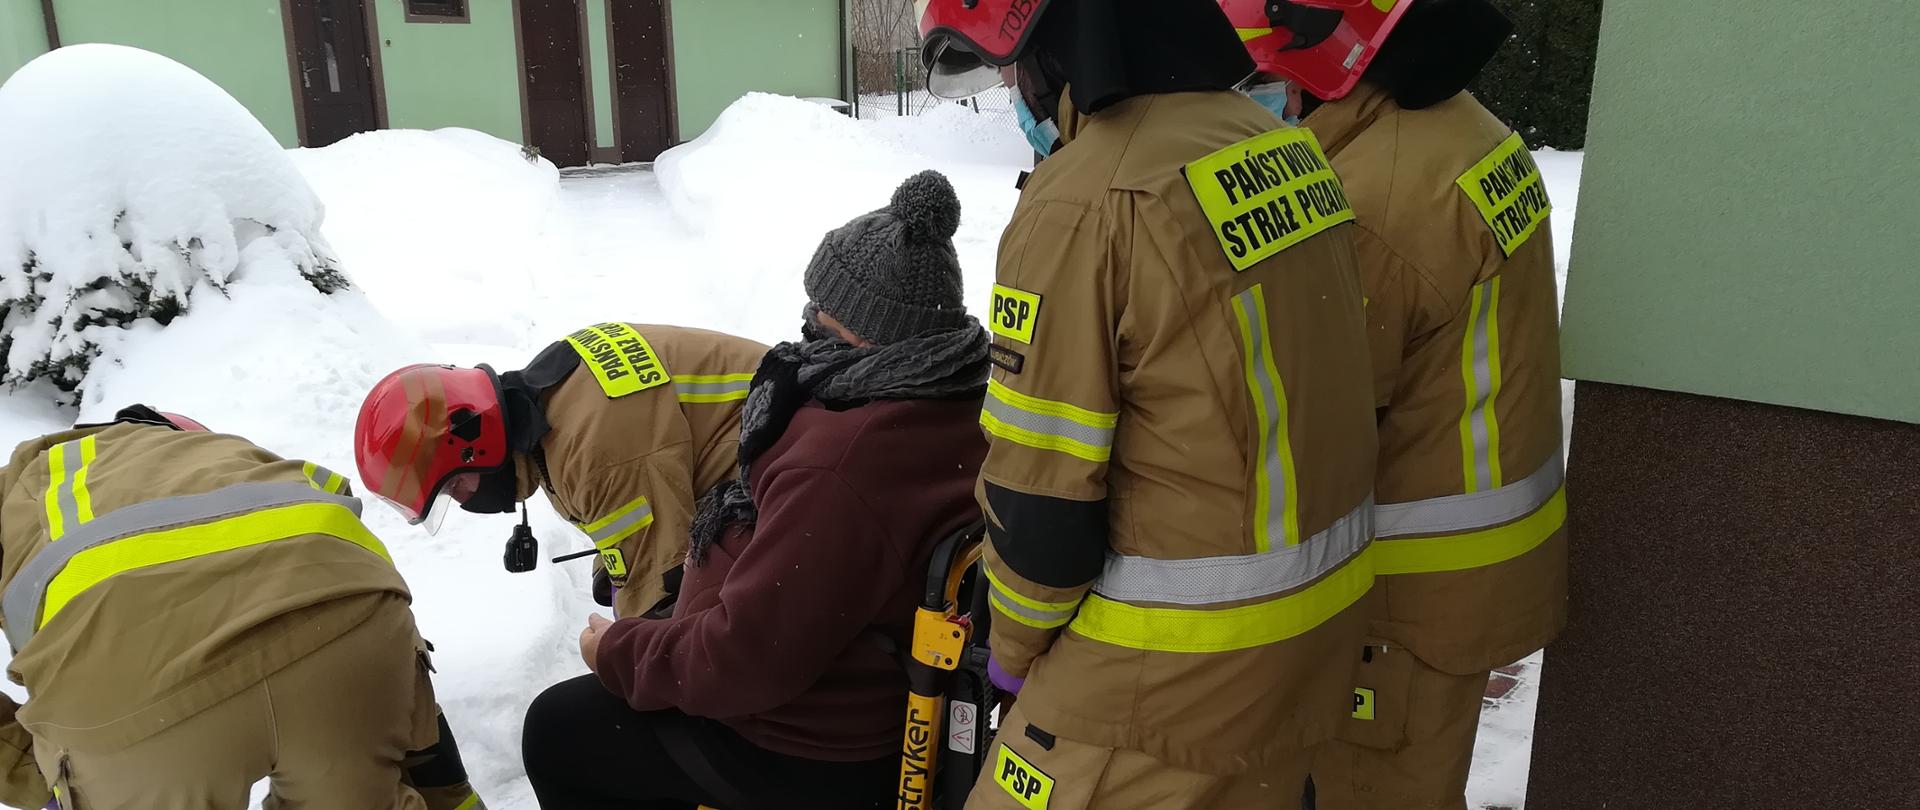 Na zdjęciu strażacy w ubraniu specjalnym w kolorze piaskowym oraz w hełmach, znoszą starszą kobietę na wózku transportowym. W tle zabudowania oraz dużo śniegu.